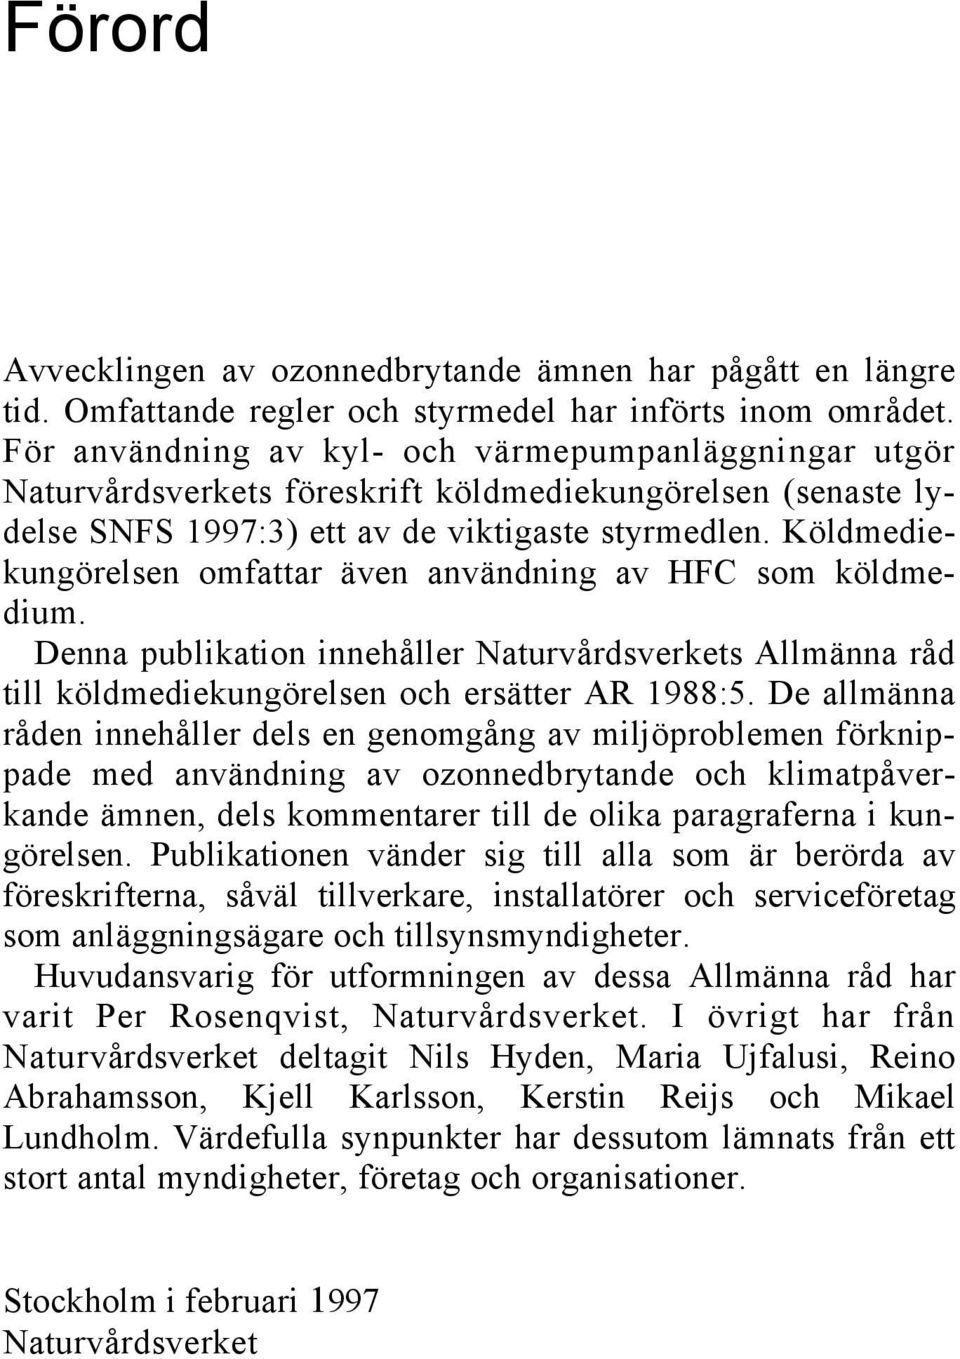 Köldmediekungörelsen omfattar även användning av HFC som köldmedium. Denna publikation innehåller Naturvårdsverkets Allmänna råd till köldmediekungörelsen och ersätter AR 1988:5.